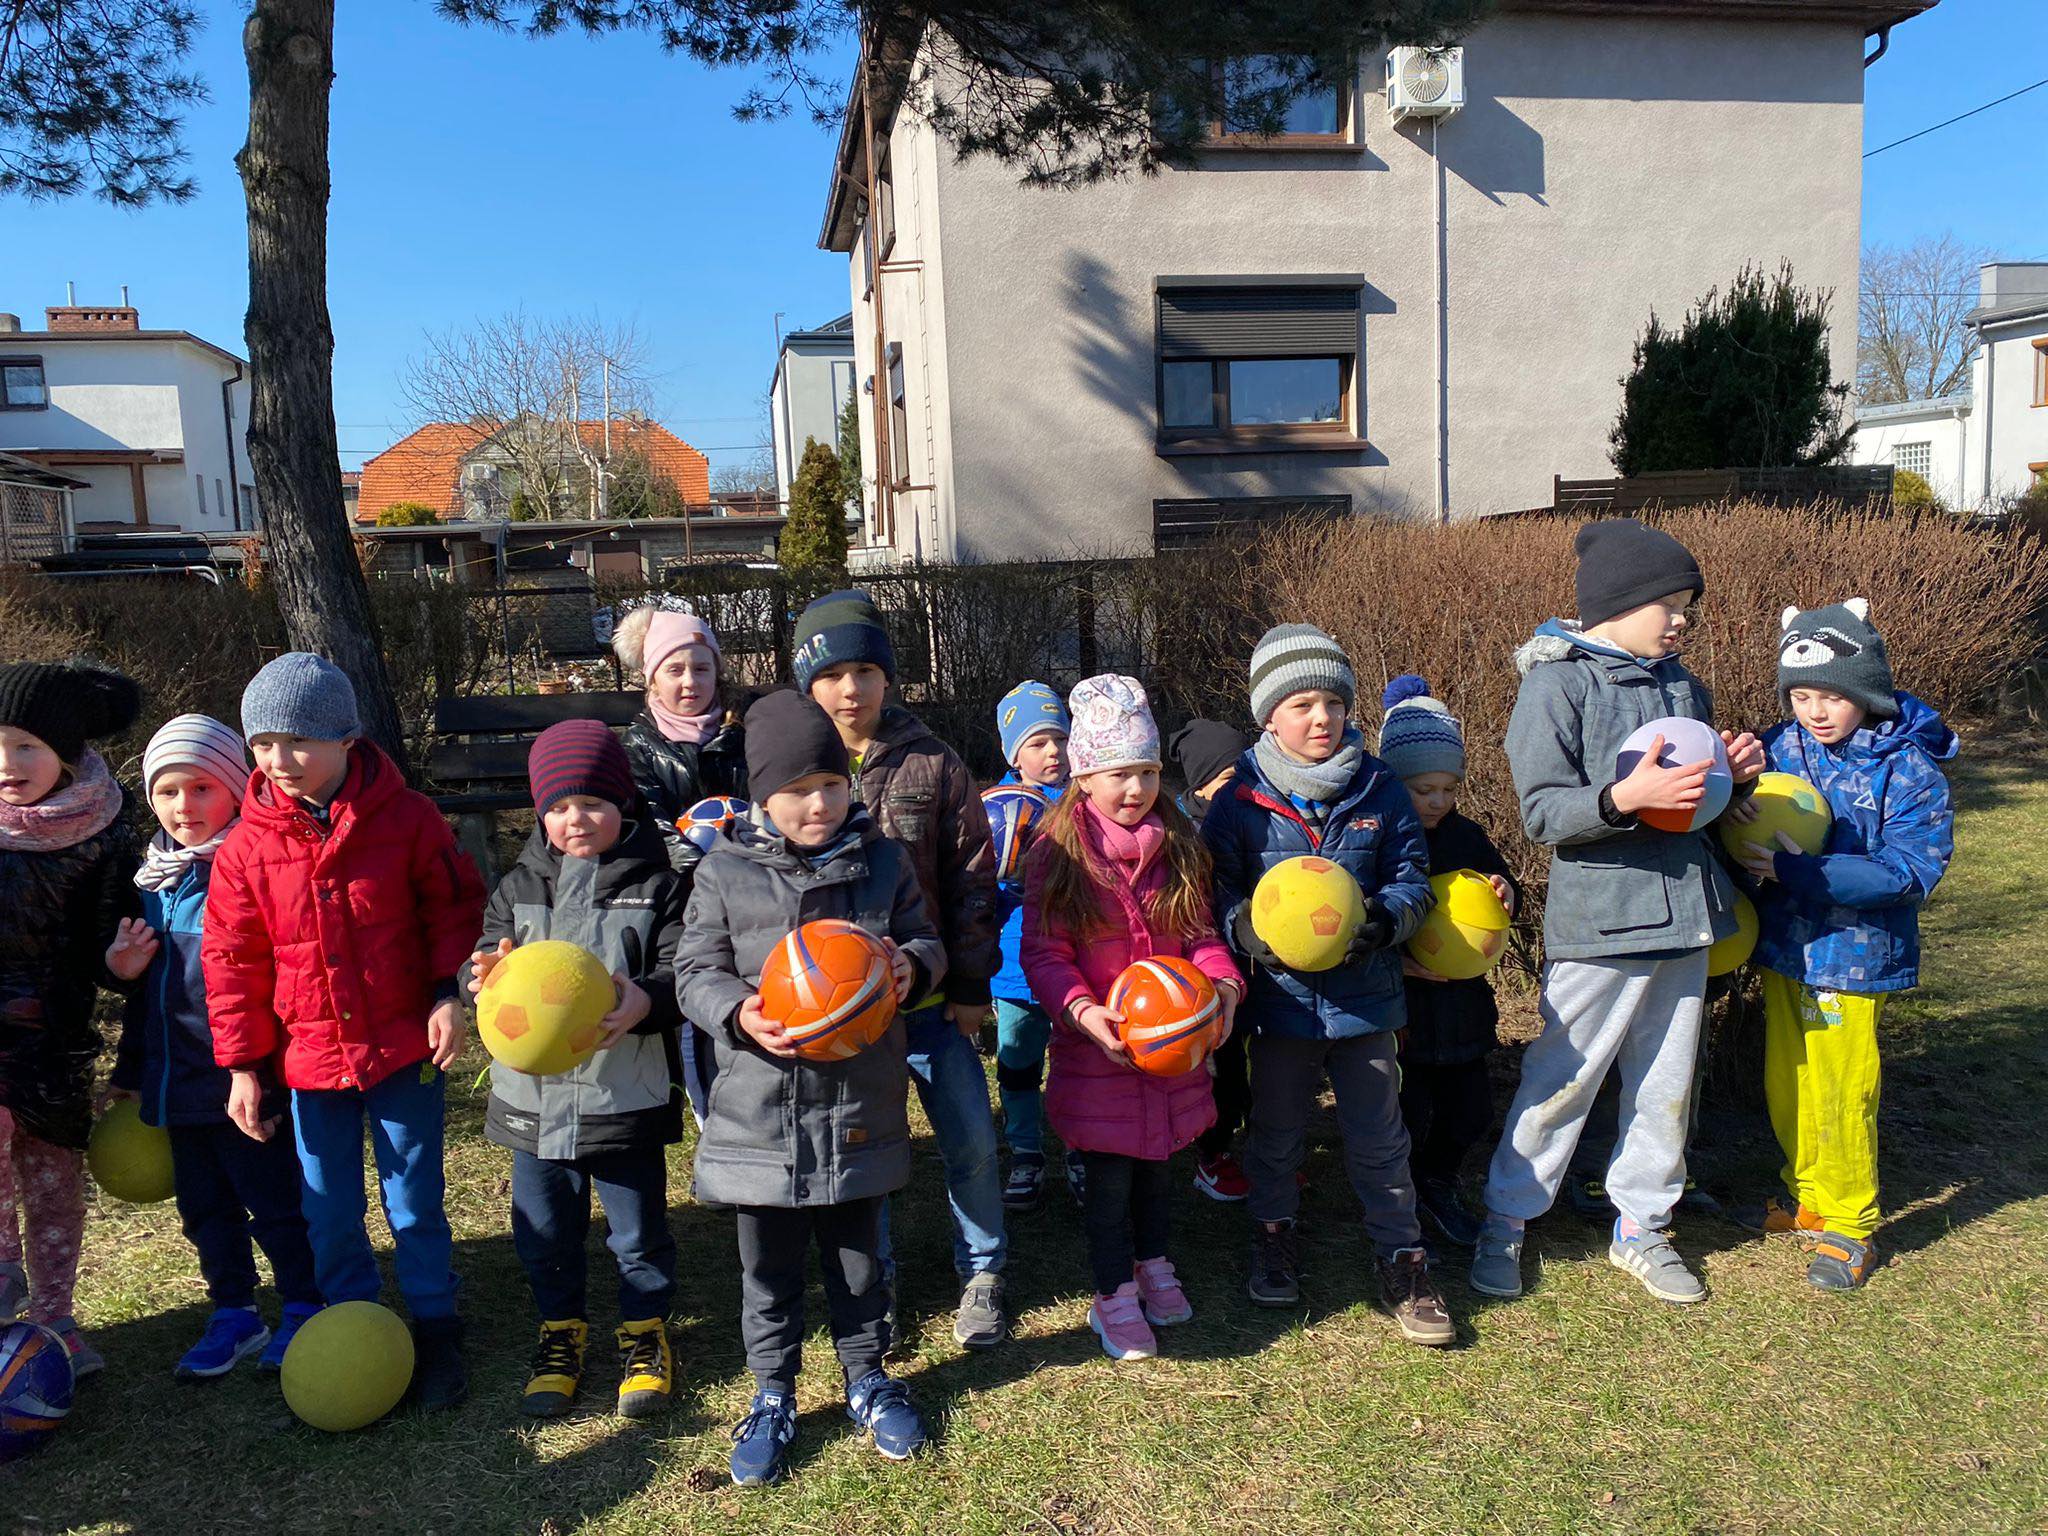 Duża grupa dzieci na dworze stoi z piłkami w ręce.